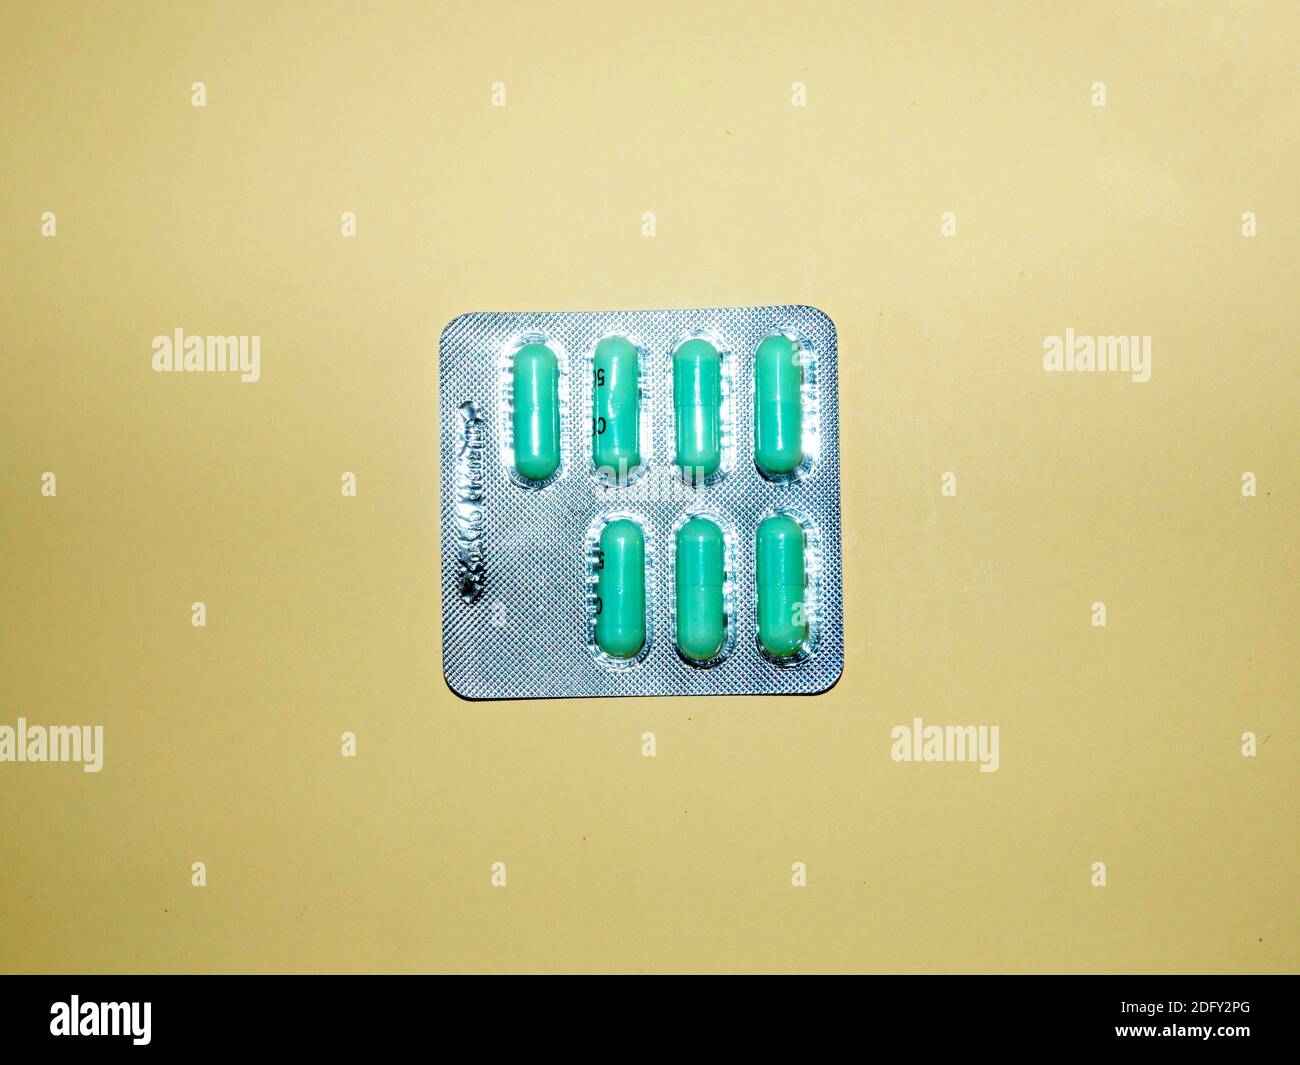 Un envase blíster de 7 tabletas de 500 mg de cefalexina para el tratamiento de infecciones de la vejiga. Un envase blíster de 7 500 mg de tabletas de cefalexina para el tratamiento de la vejiga Foto de stock